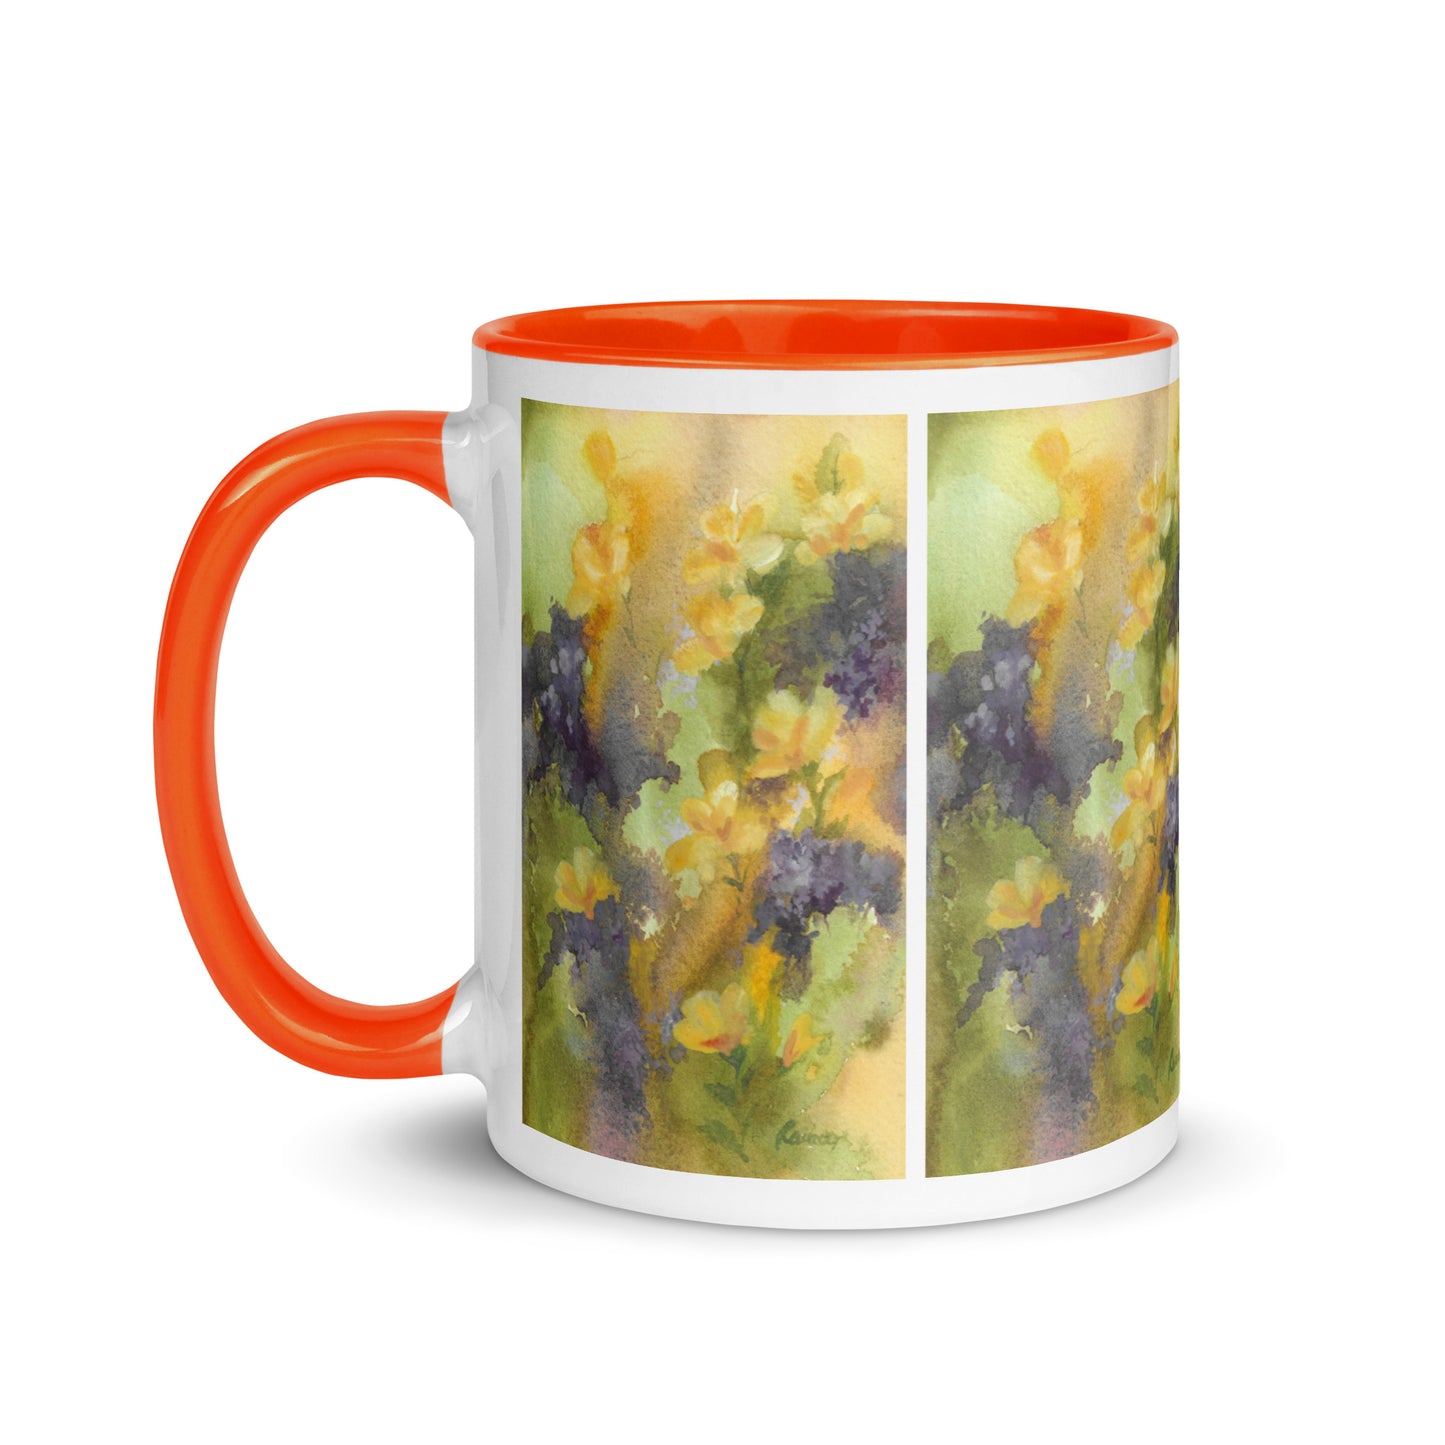 "Flower Feelings" Coffee or Tea Mug Design by Rainey Dewey